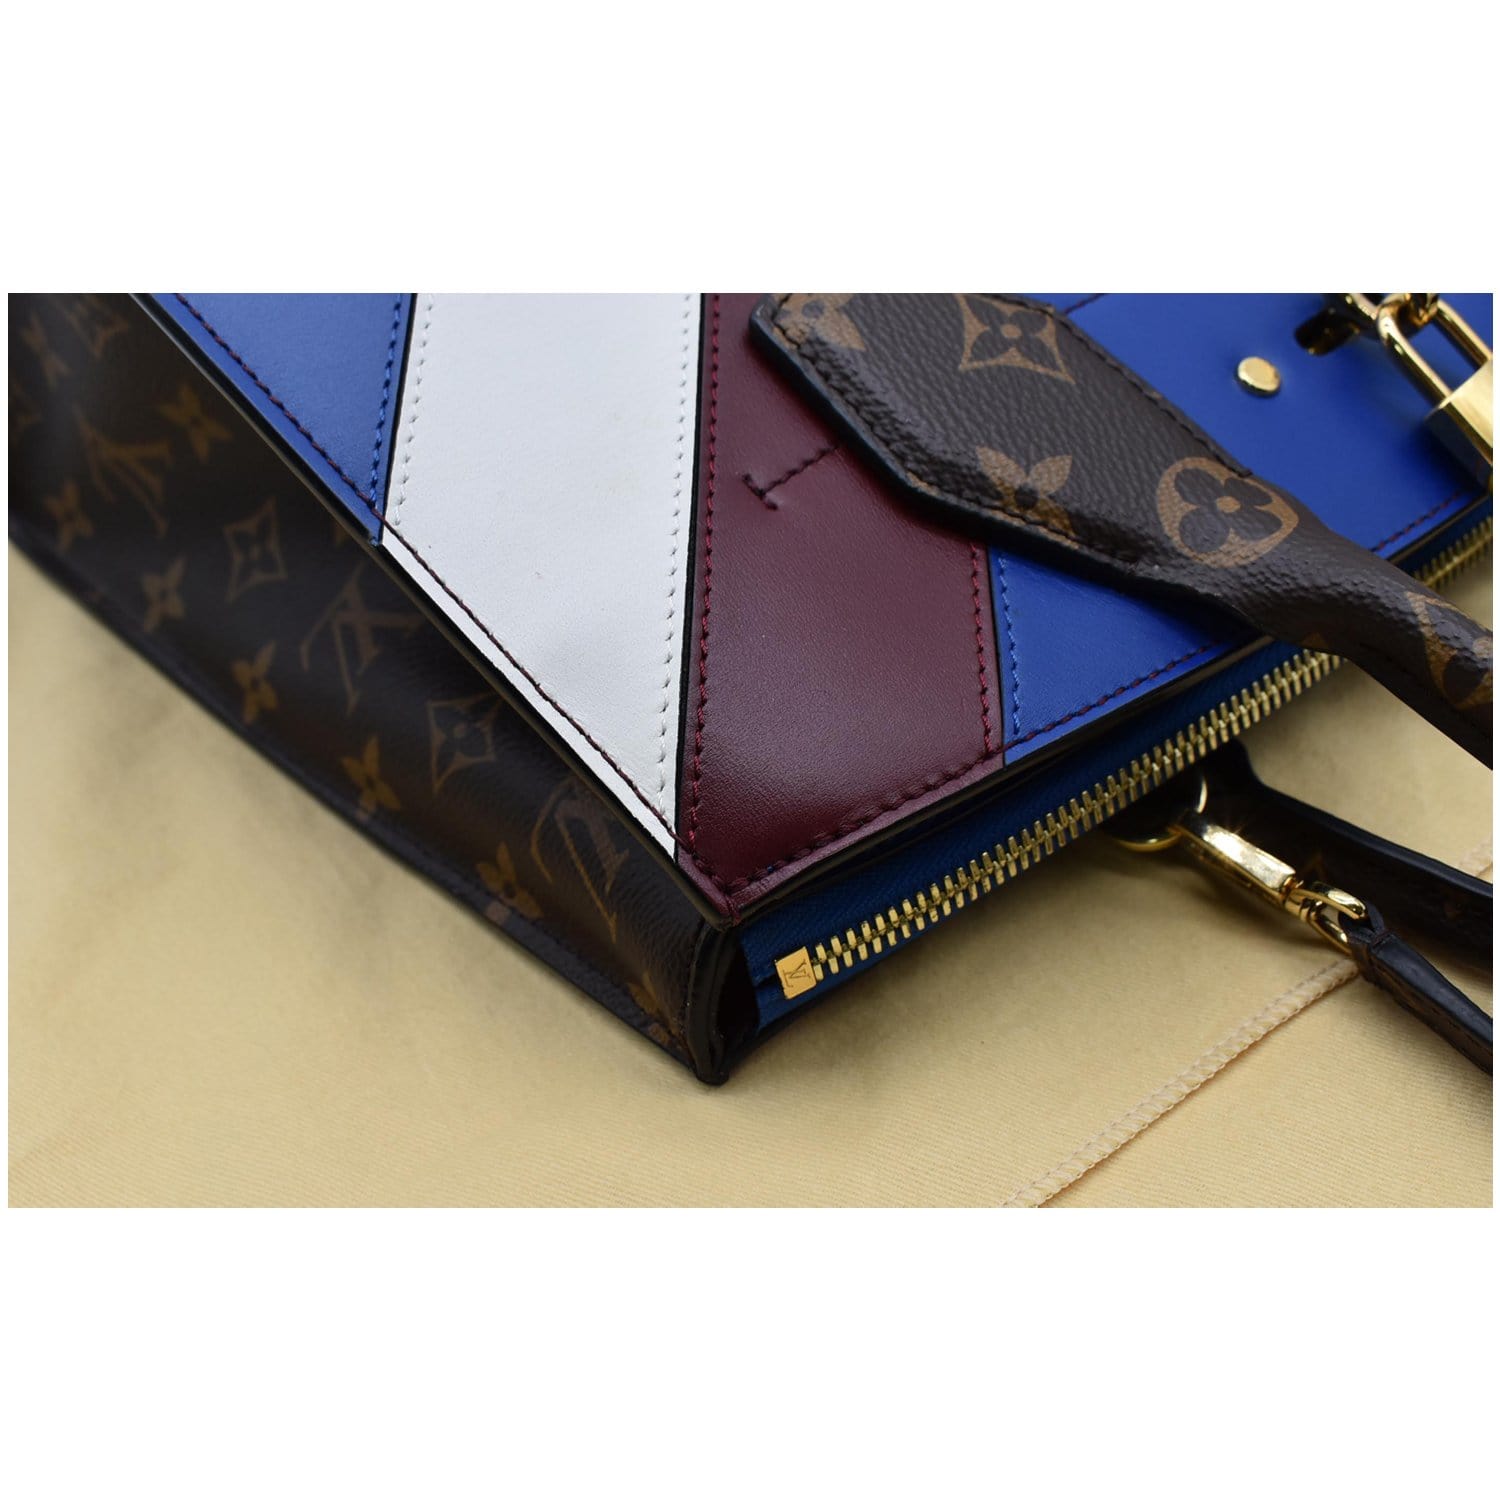 Louis Vuitton, Bags, Authentic Louis Vuitton Wallet Date Code Sd916